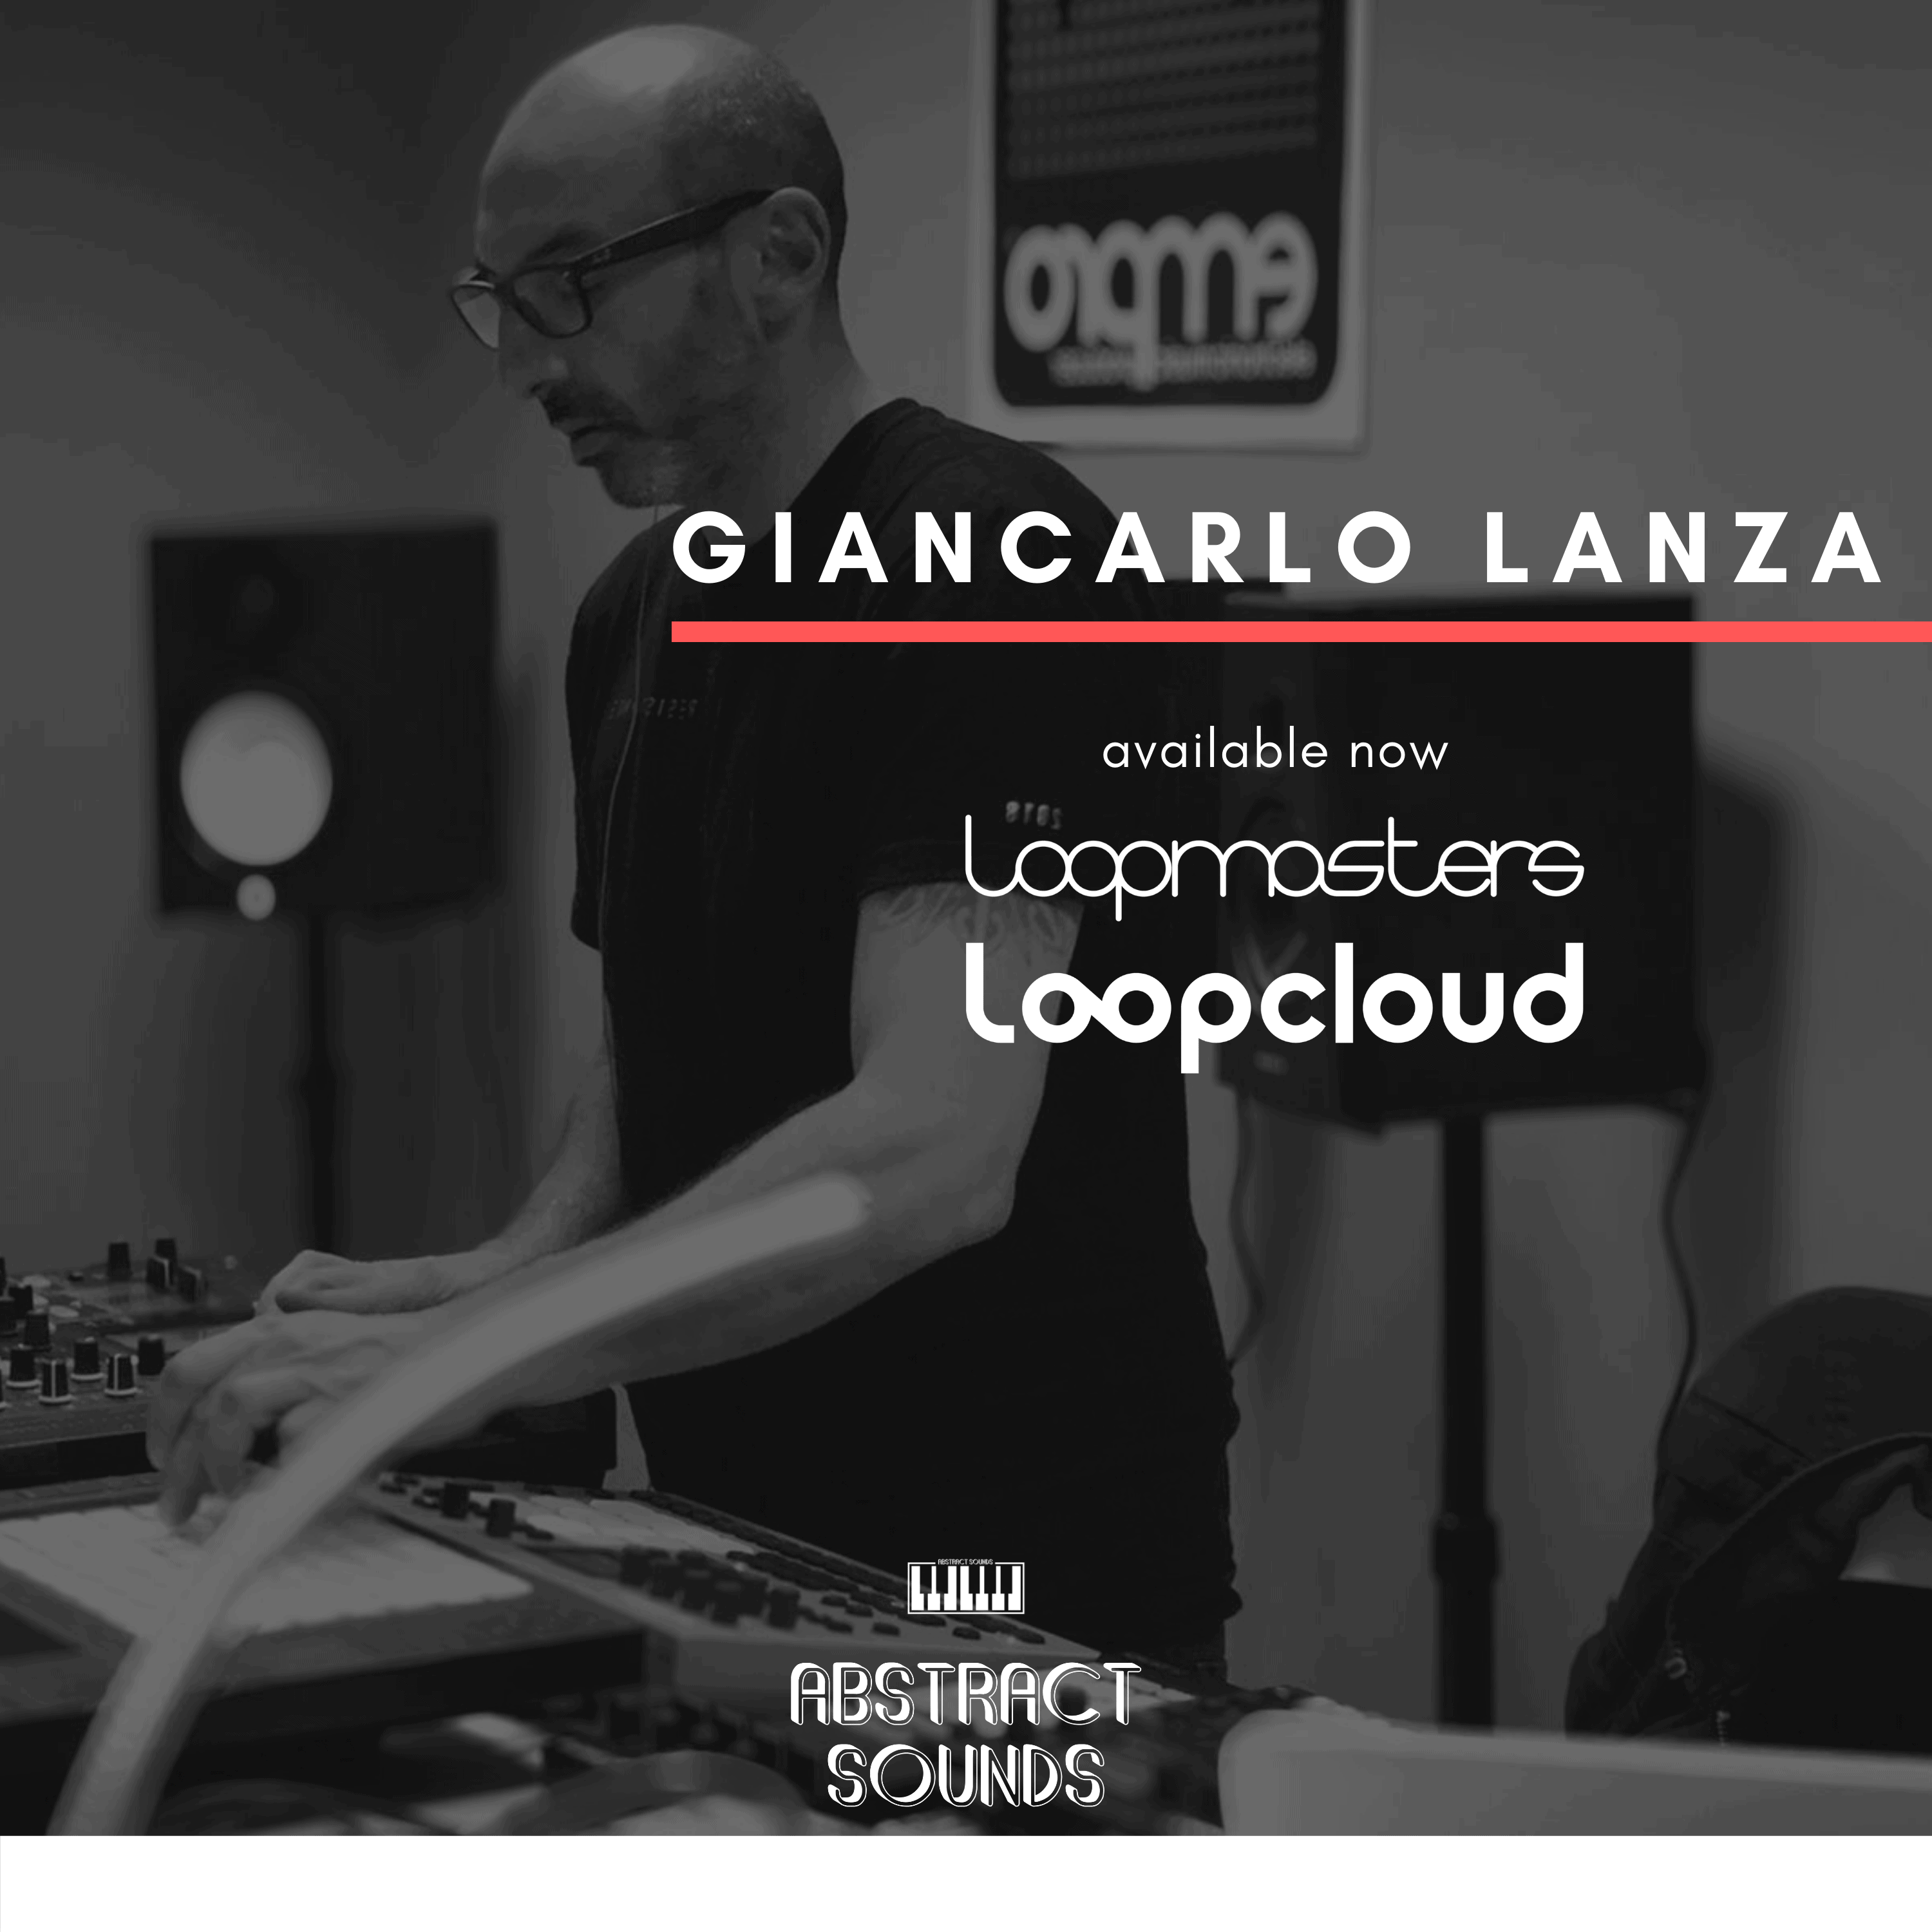 2 Giancarlo Lanza Art